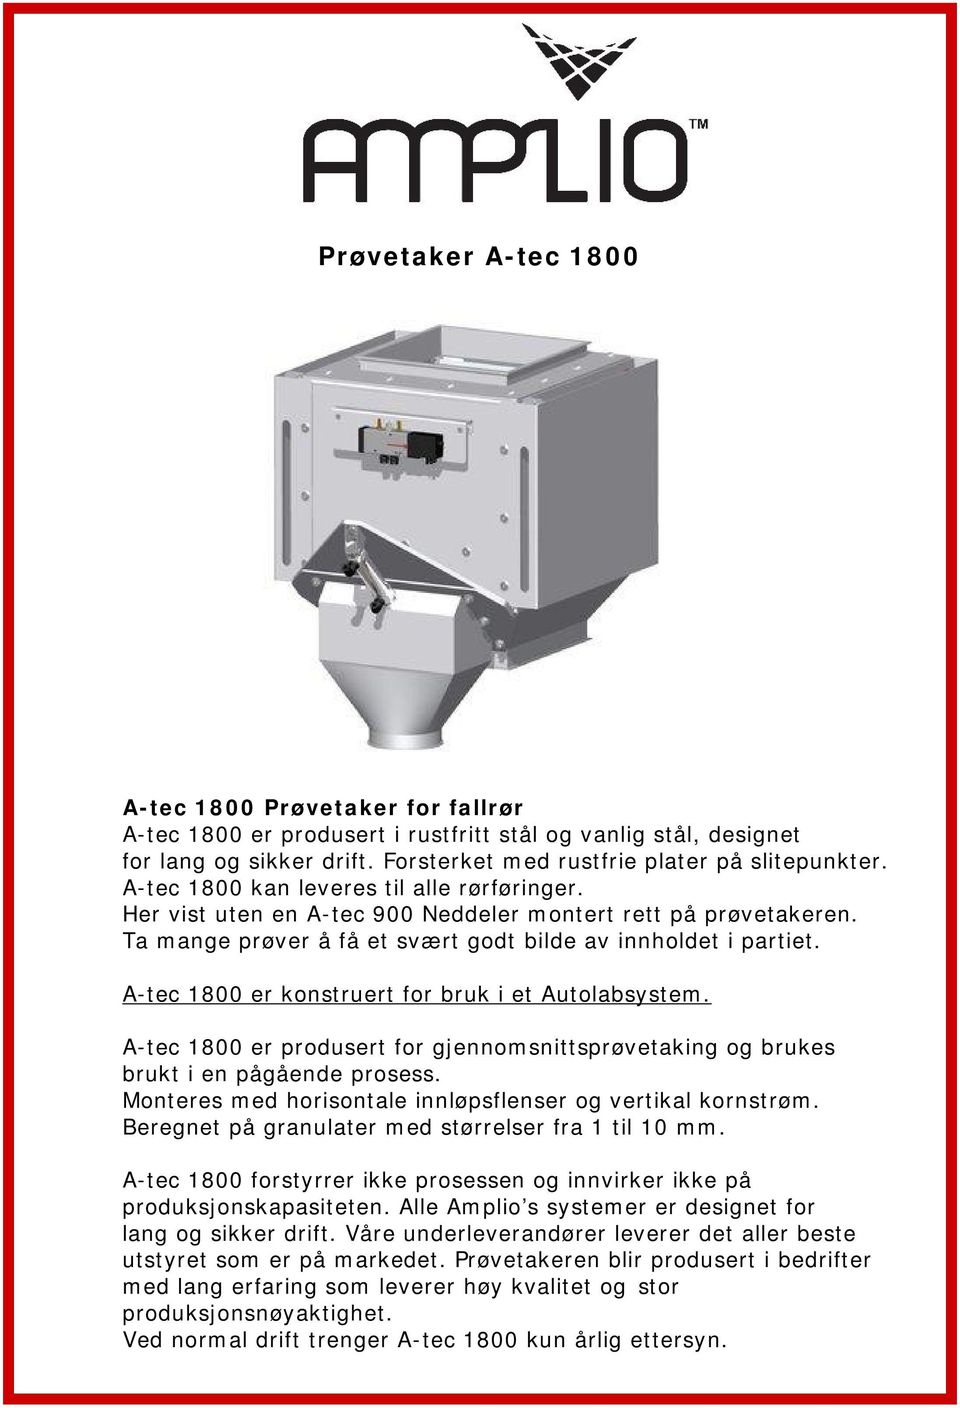 A-tec 1800 er konstruert for bruk i et Autolabsystem. A-tec 1800 er produsert for gjennomsnittsprøvetaking og brukes brukt i en pågående prosess.